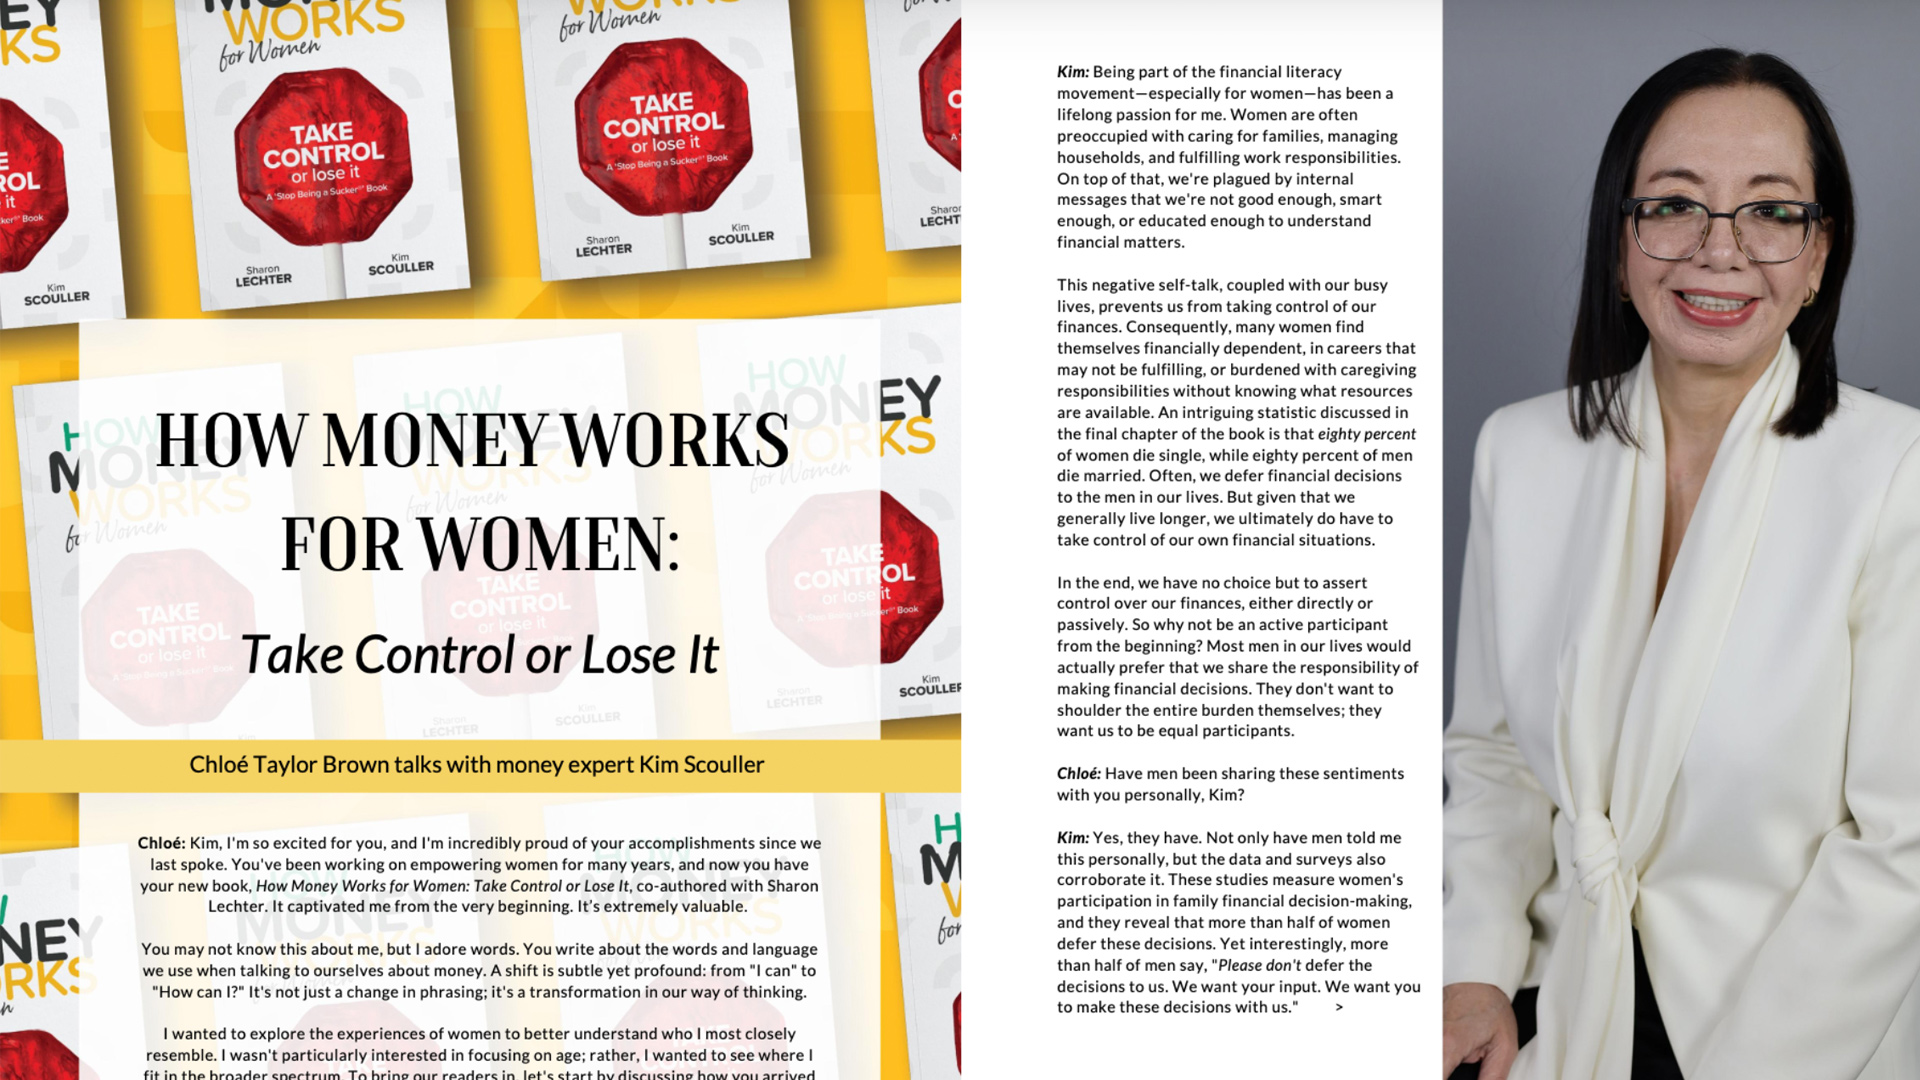 Neues Interview mit Kim Scouller im Flourish Magazine über "HowMoneyWorks: Kontrolle übernehmen oder verlieren"